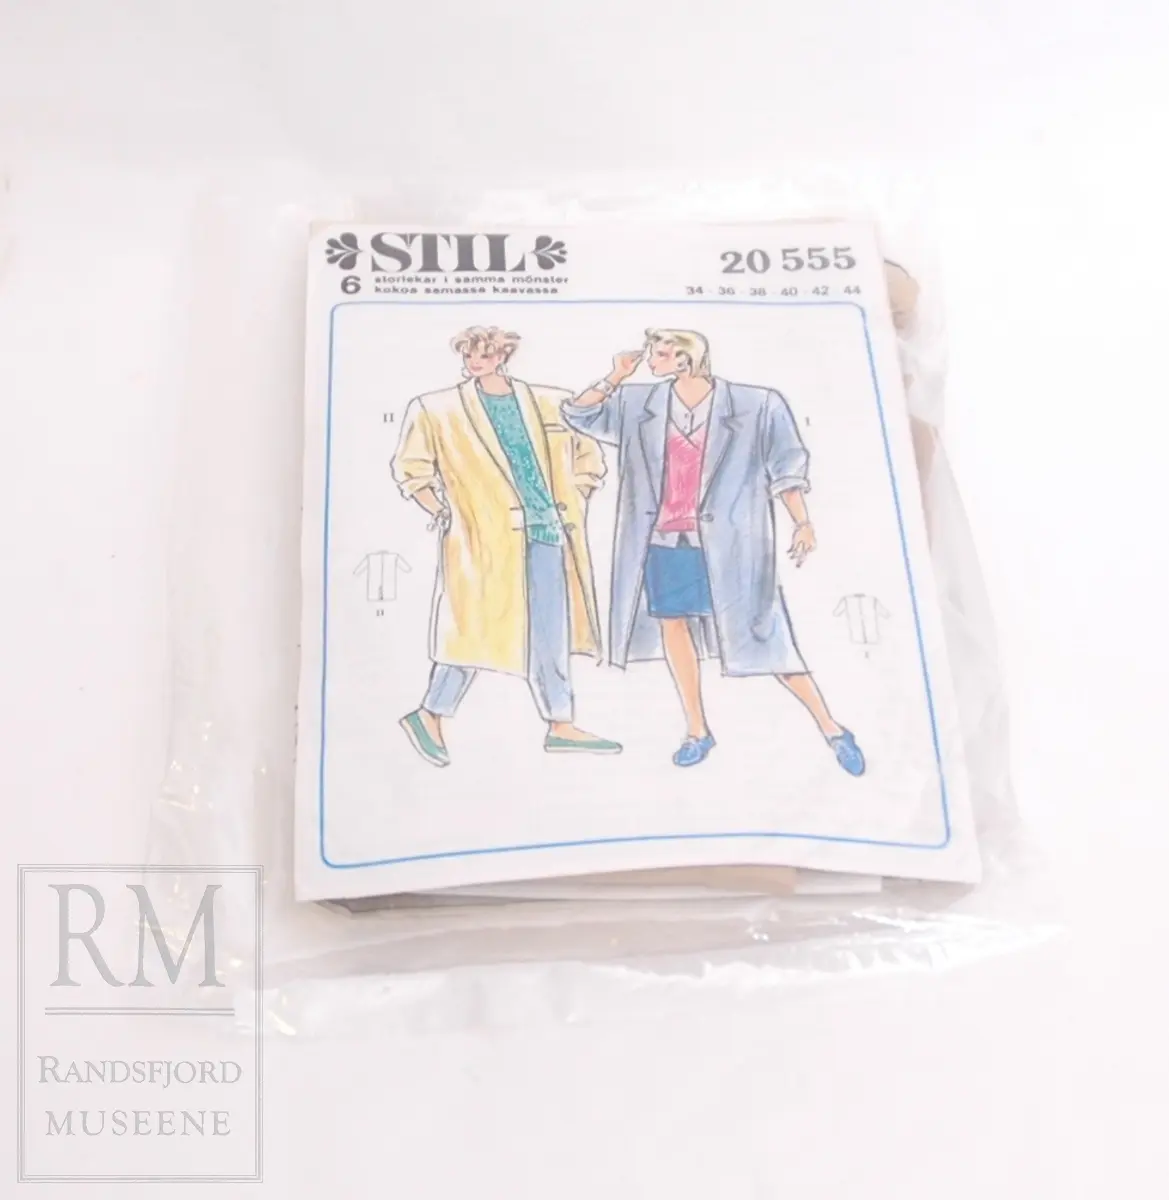  Mønsteret og forsiden er pakket inn i en blank plastikkpose
Strektegningen på forsiden forestiller to kvinner med frakk, en som en kan sy av mønsteret. En vid frakk som går til under kneet.
